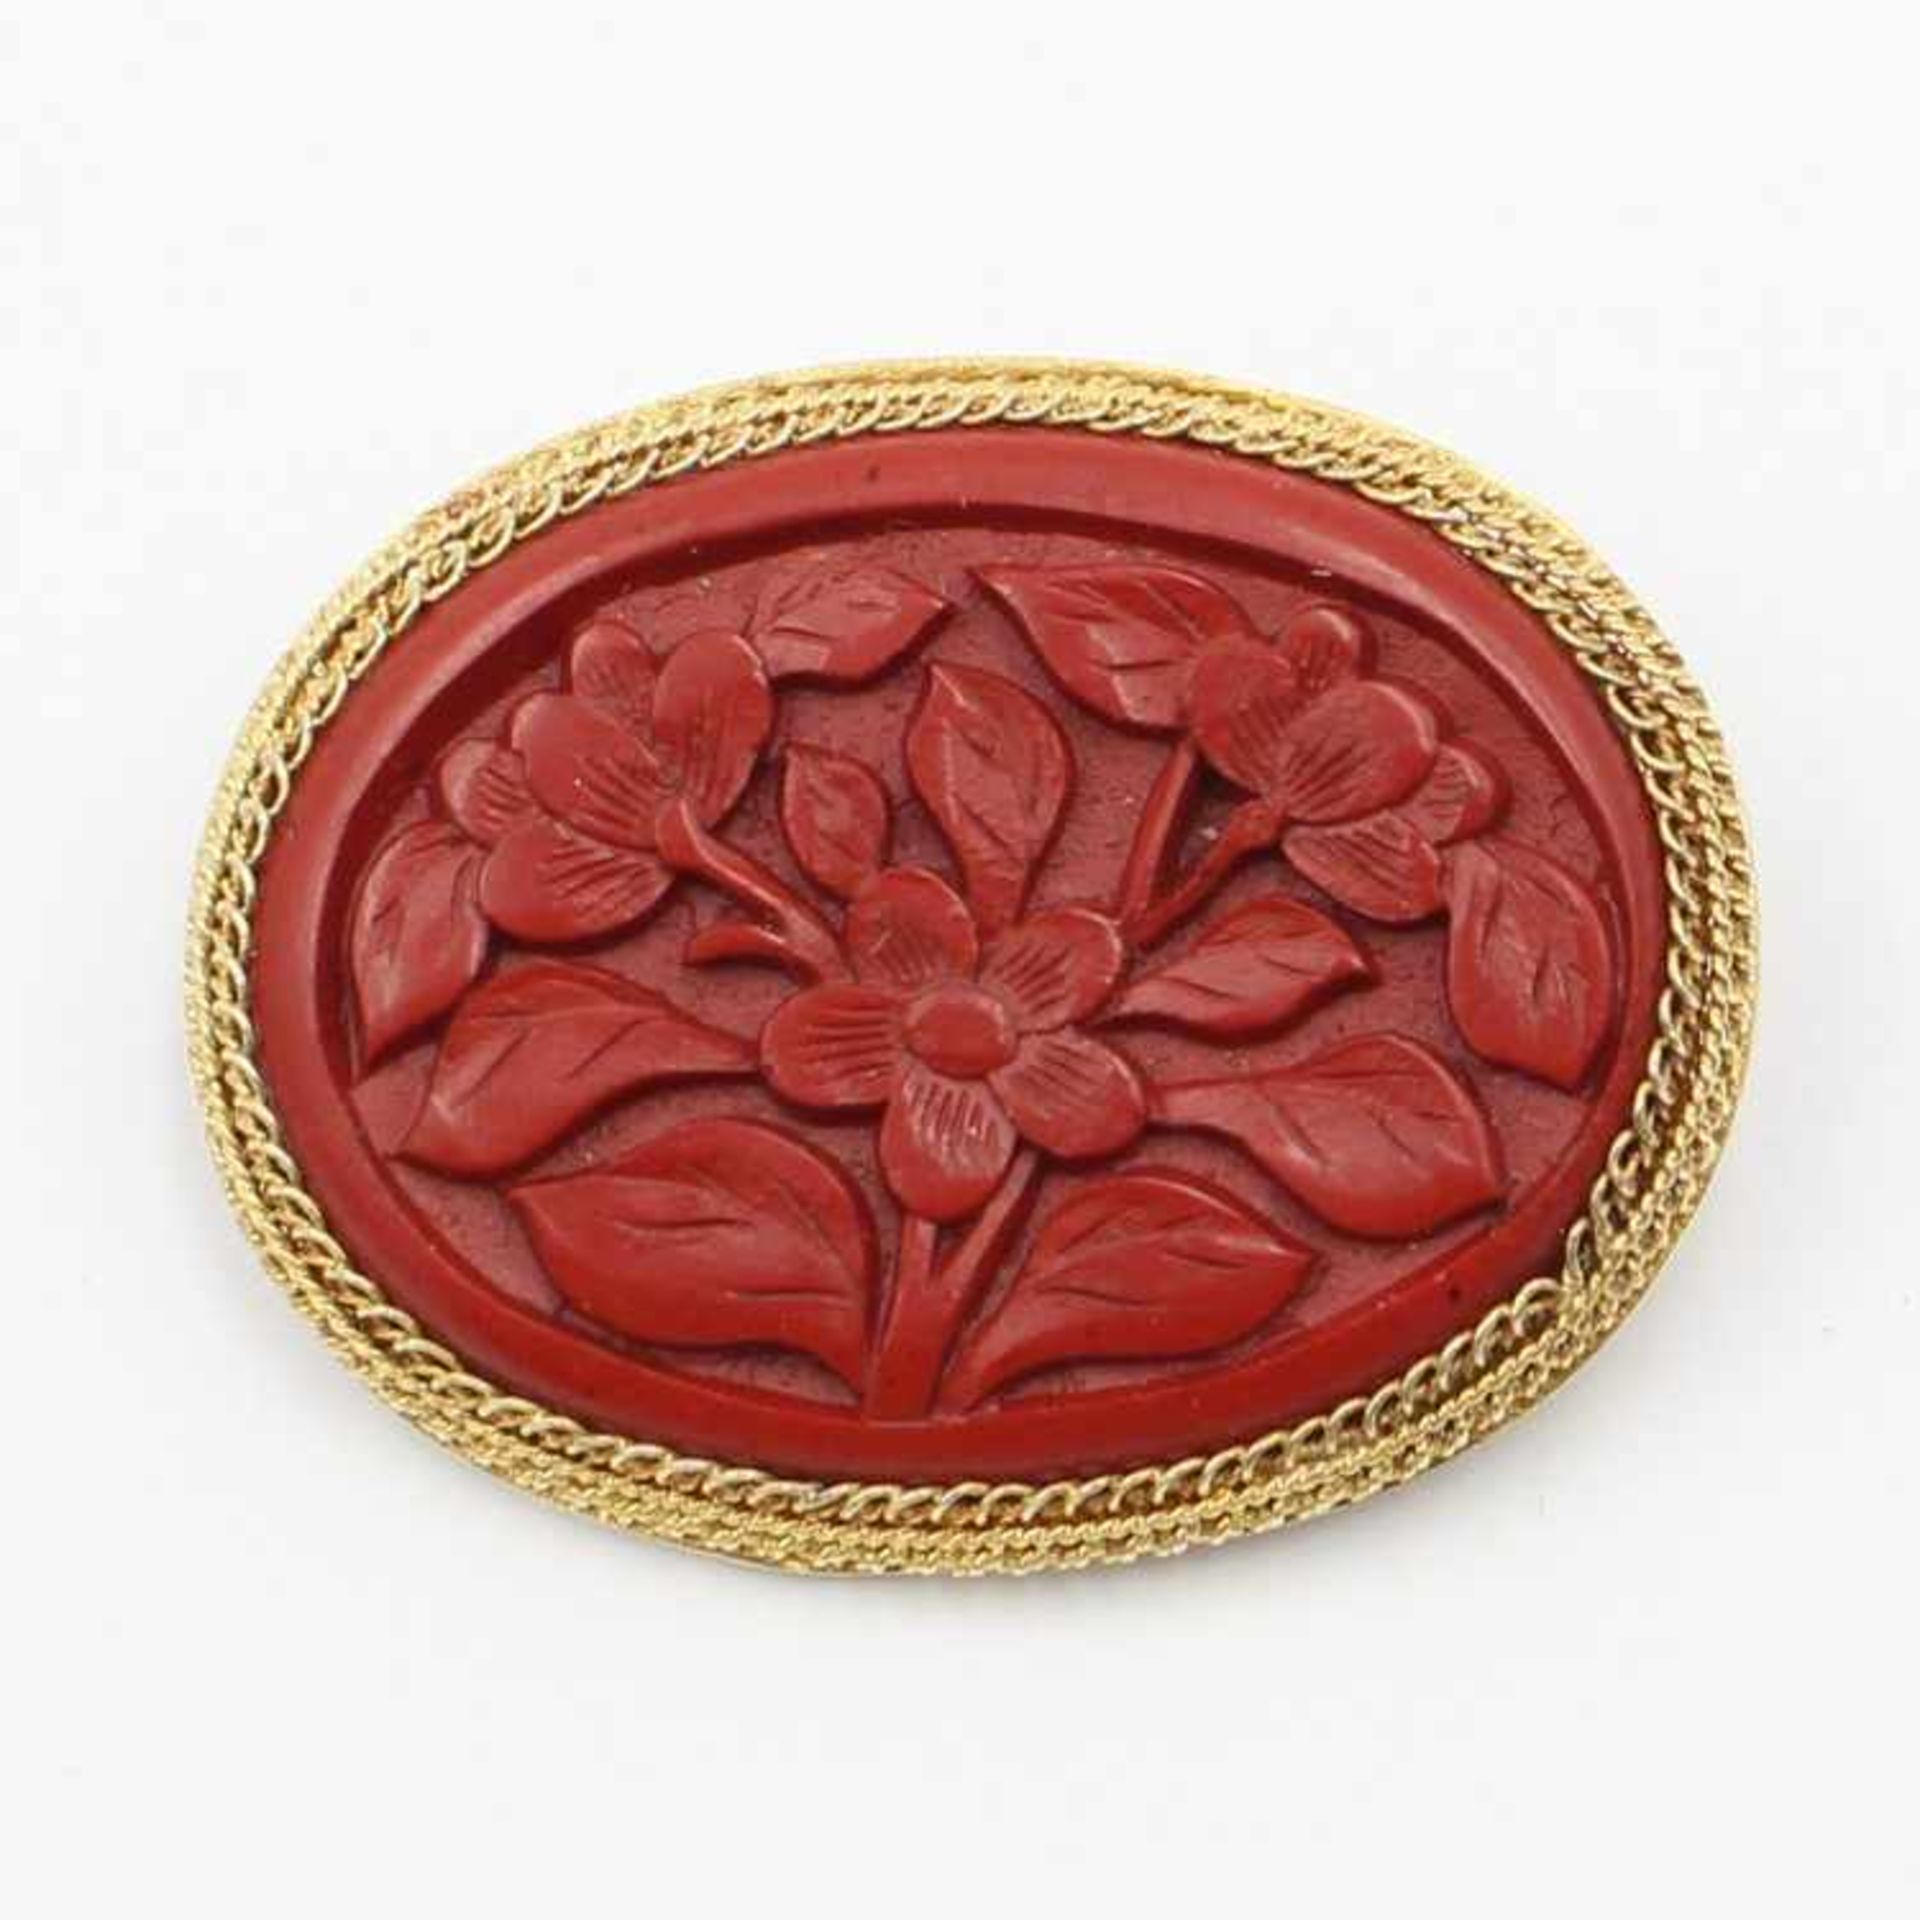 BroscheSi vergold., oval, mittig besetzt mit rotem Plättchen, dieses mit reliefiertem Blütendekor,